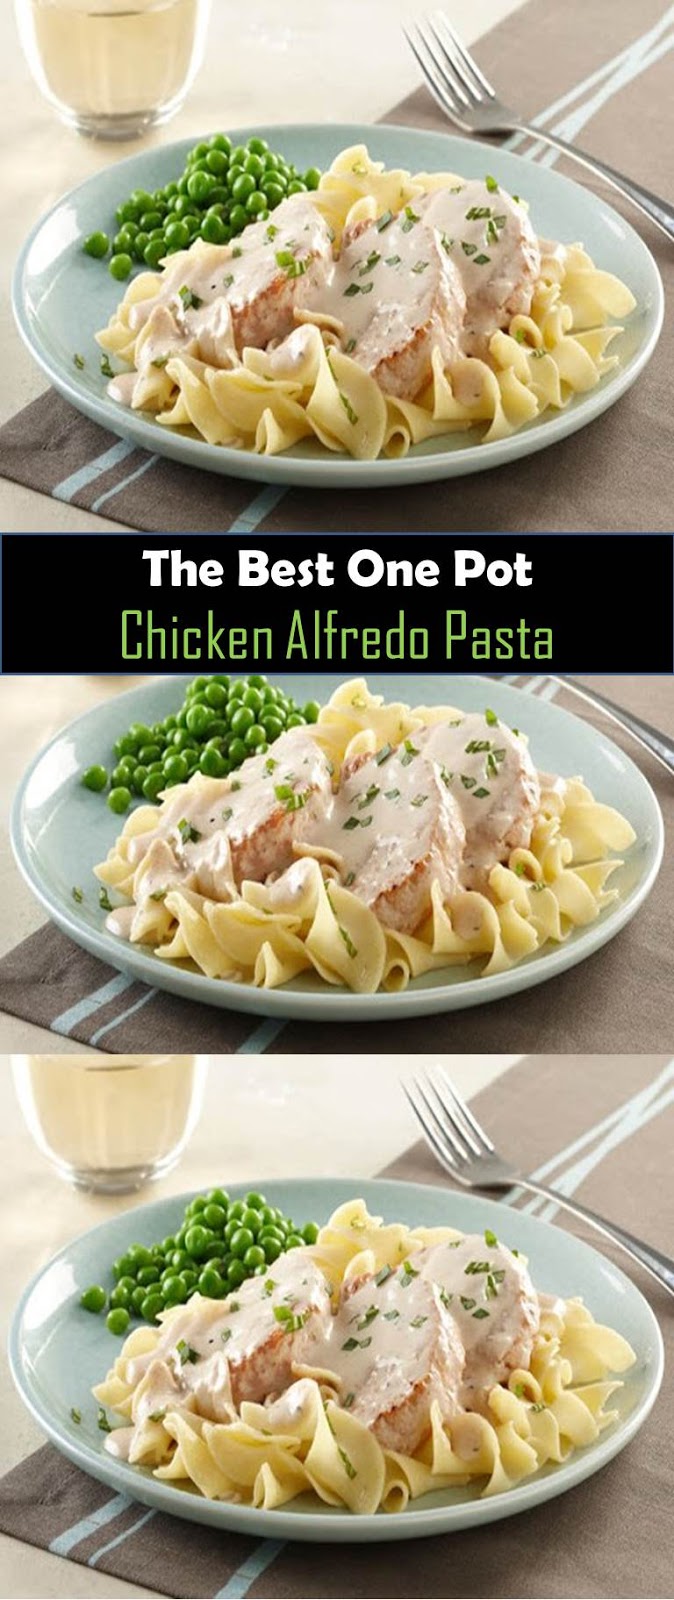 One Pot Chicken Alfredo Pasta